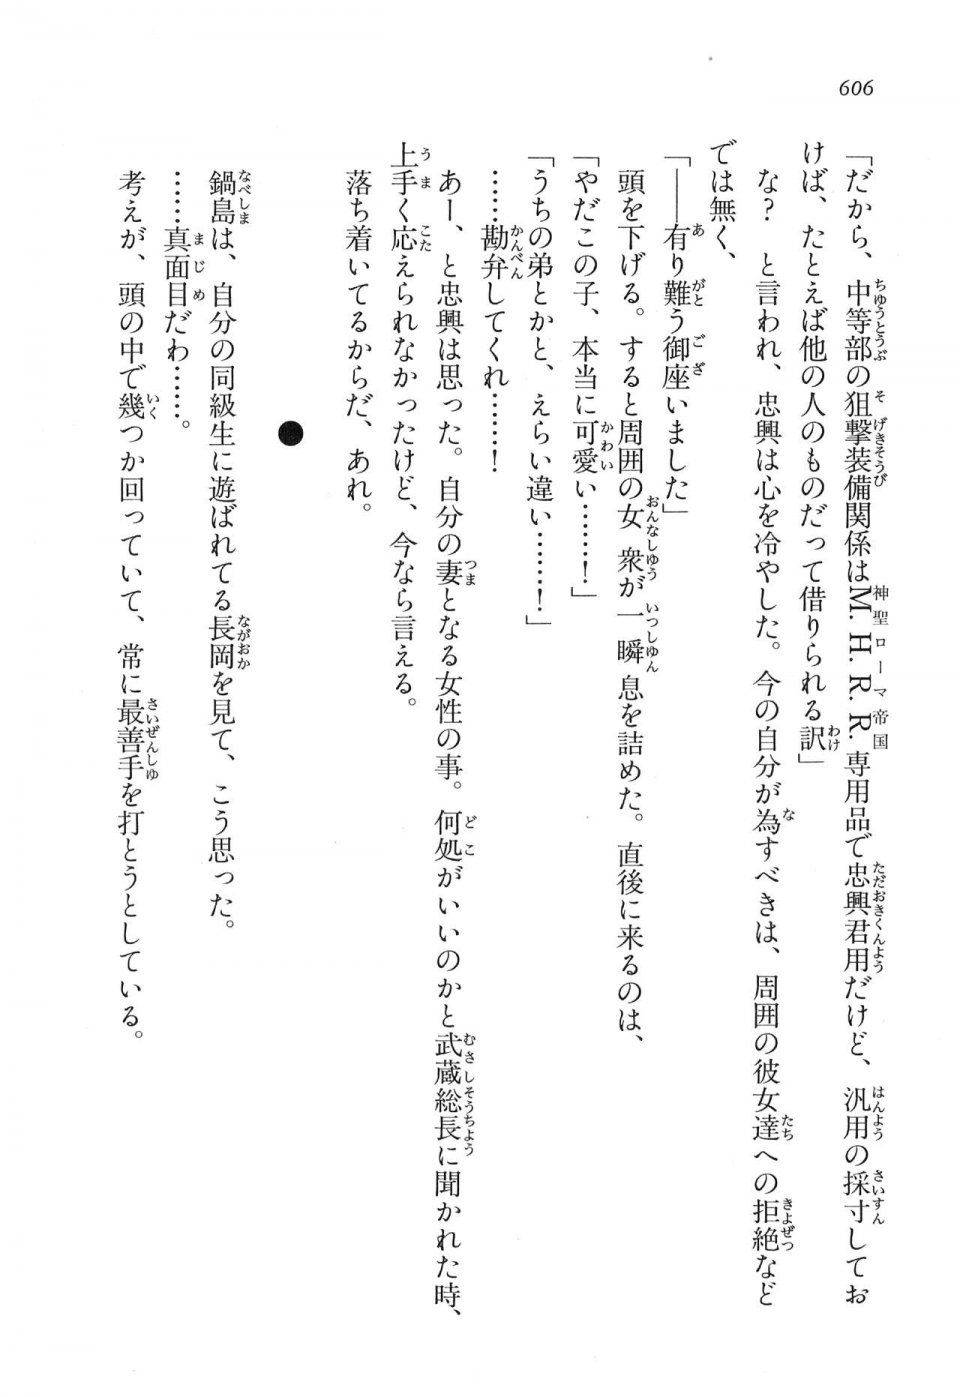 Kyoukai Senjou no Horizon LN Vol 16(7A) - Photo #606